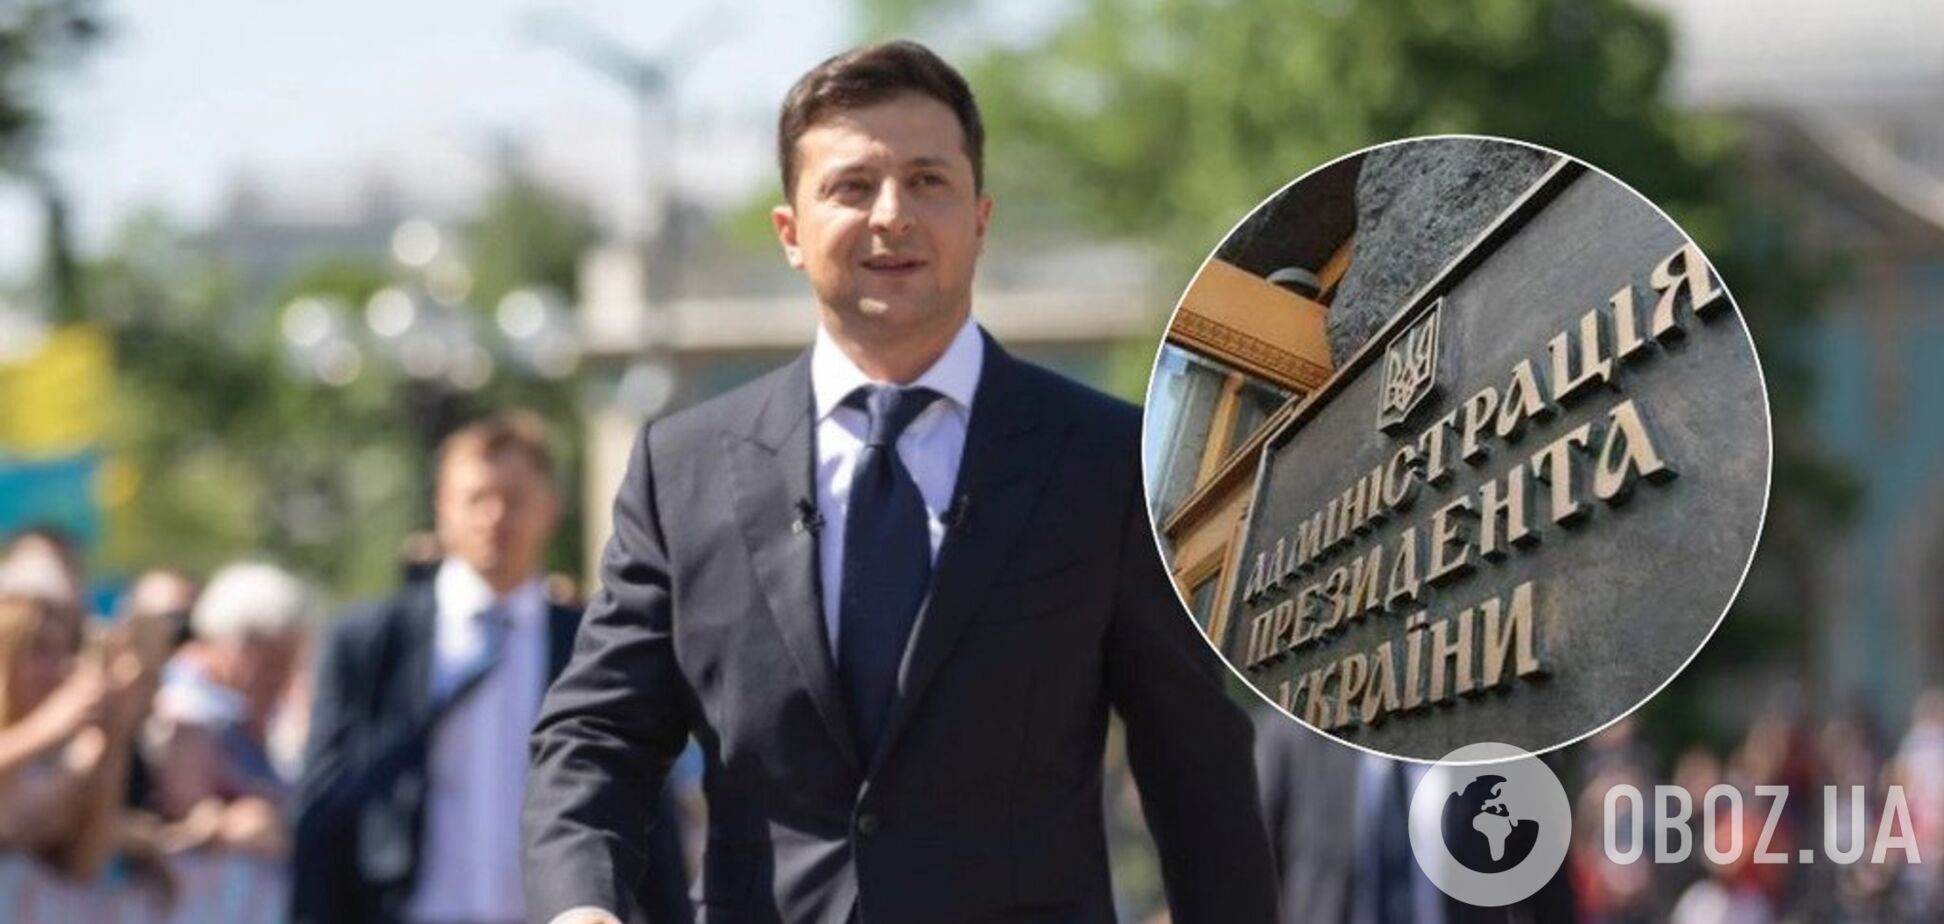 Зеленский назначил главу Администрации президента: кто он